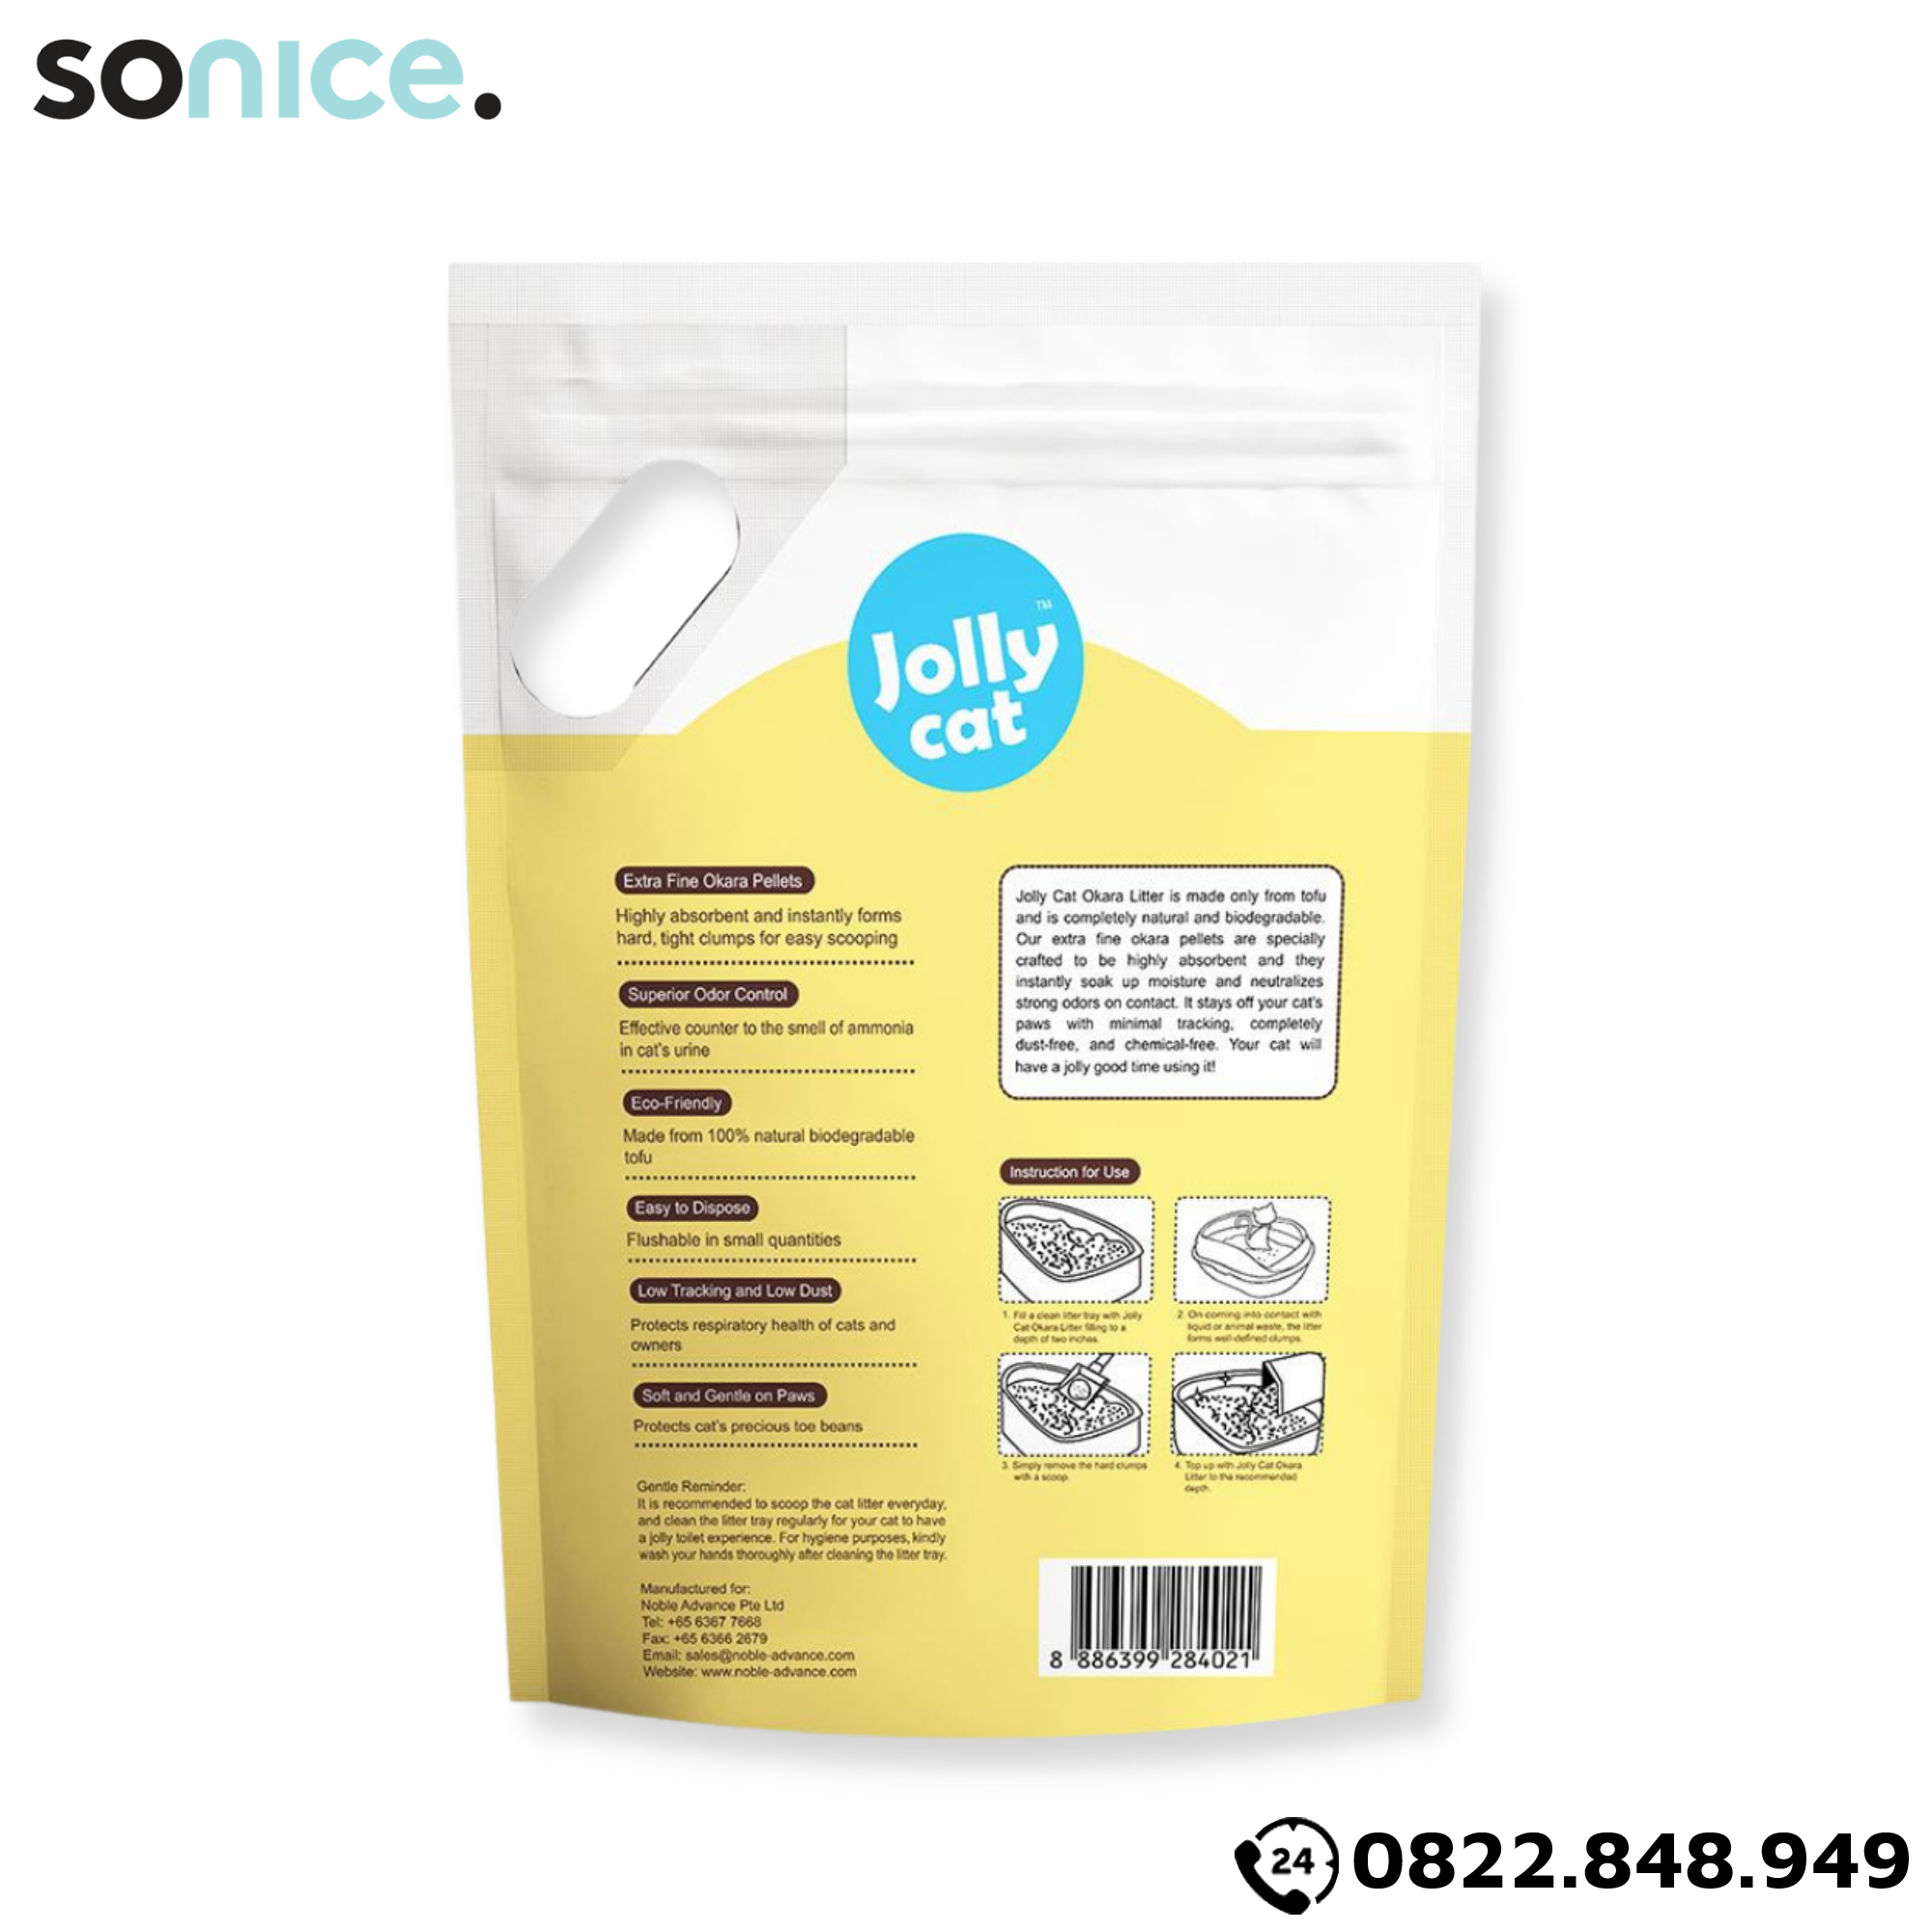  Cát vệ sinh Premium Tofu Jolly Cat Litter Corn 18L - Làm từ đậu nành soya hương bắp SONICE. 